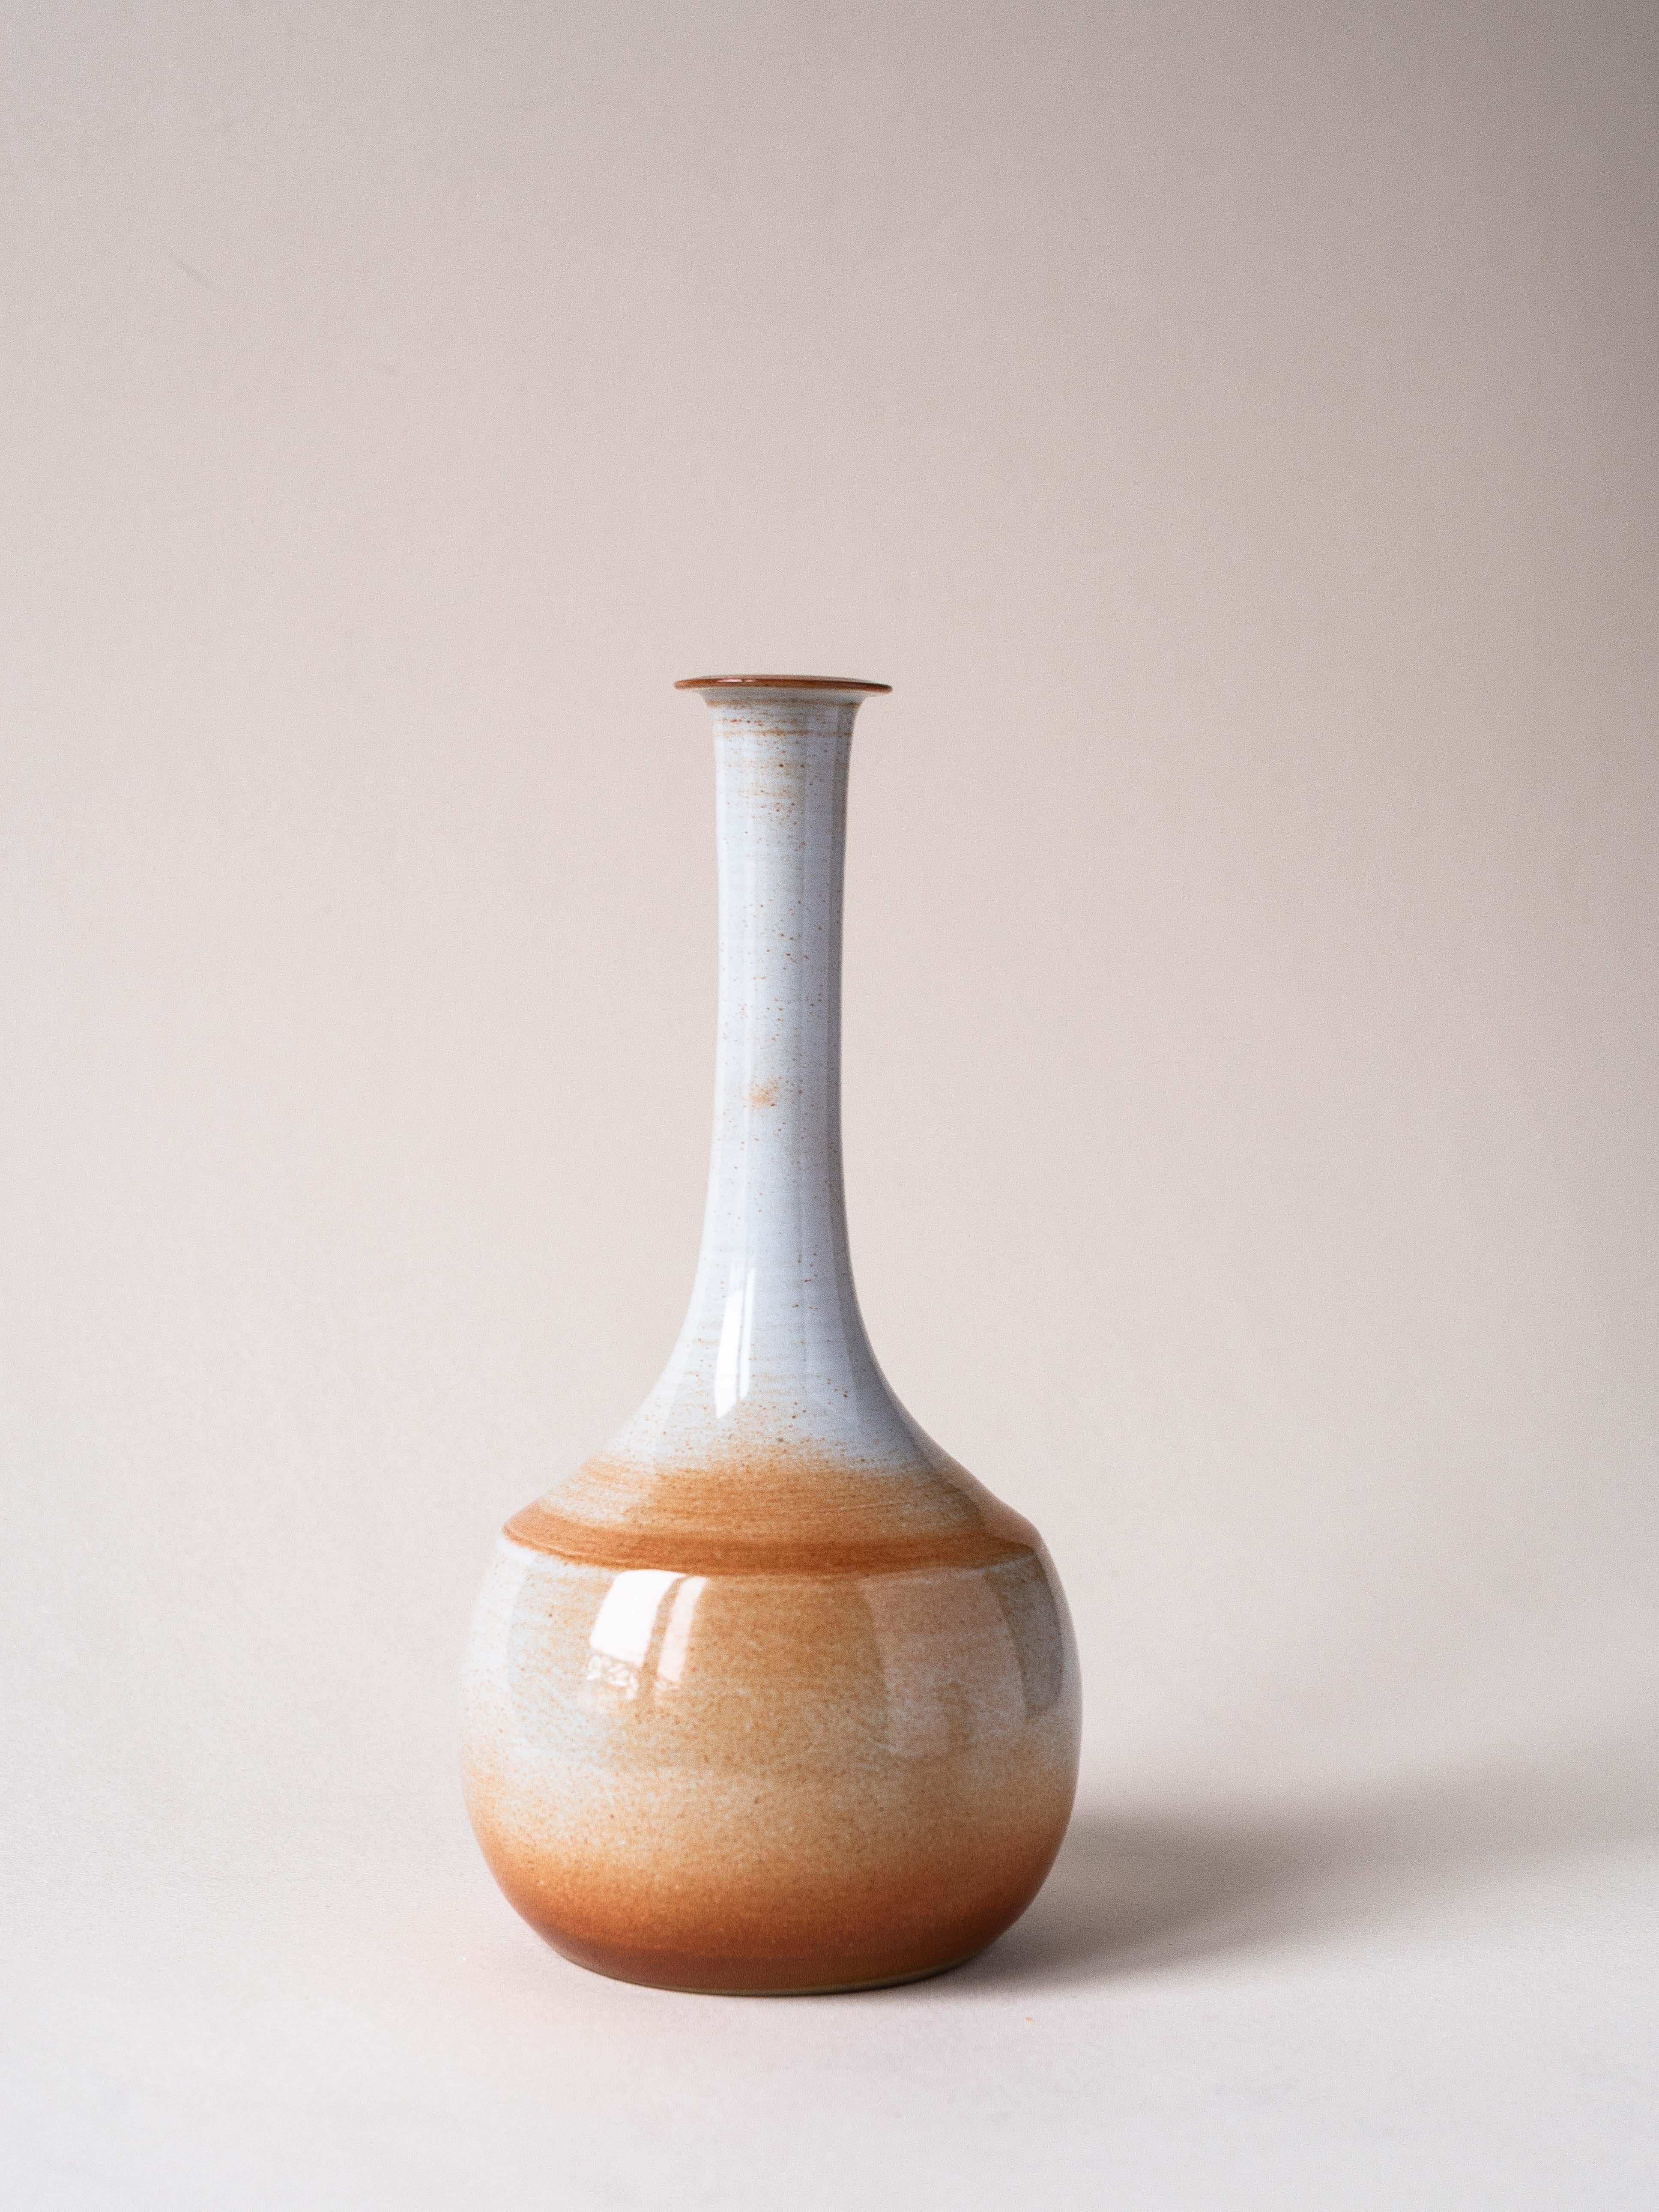 Vase ou Solifore en céramique, France 1970.

Elegant émail de couleur beige, orange et marron.

Design/One : un design chic !

Diamètre du trou sur le dessus : 2,5cm

Une très petite perte sur le dessus, voir la dernière photo.